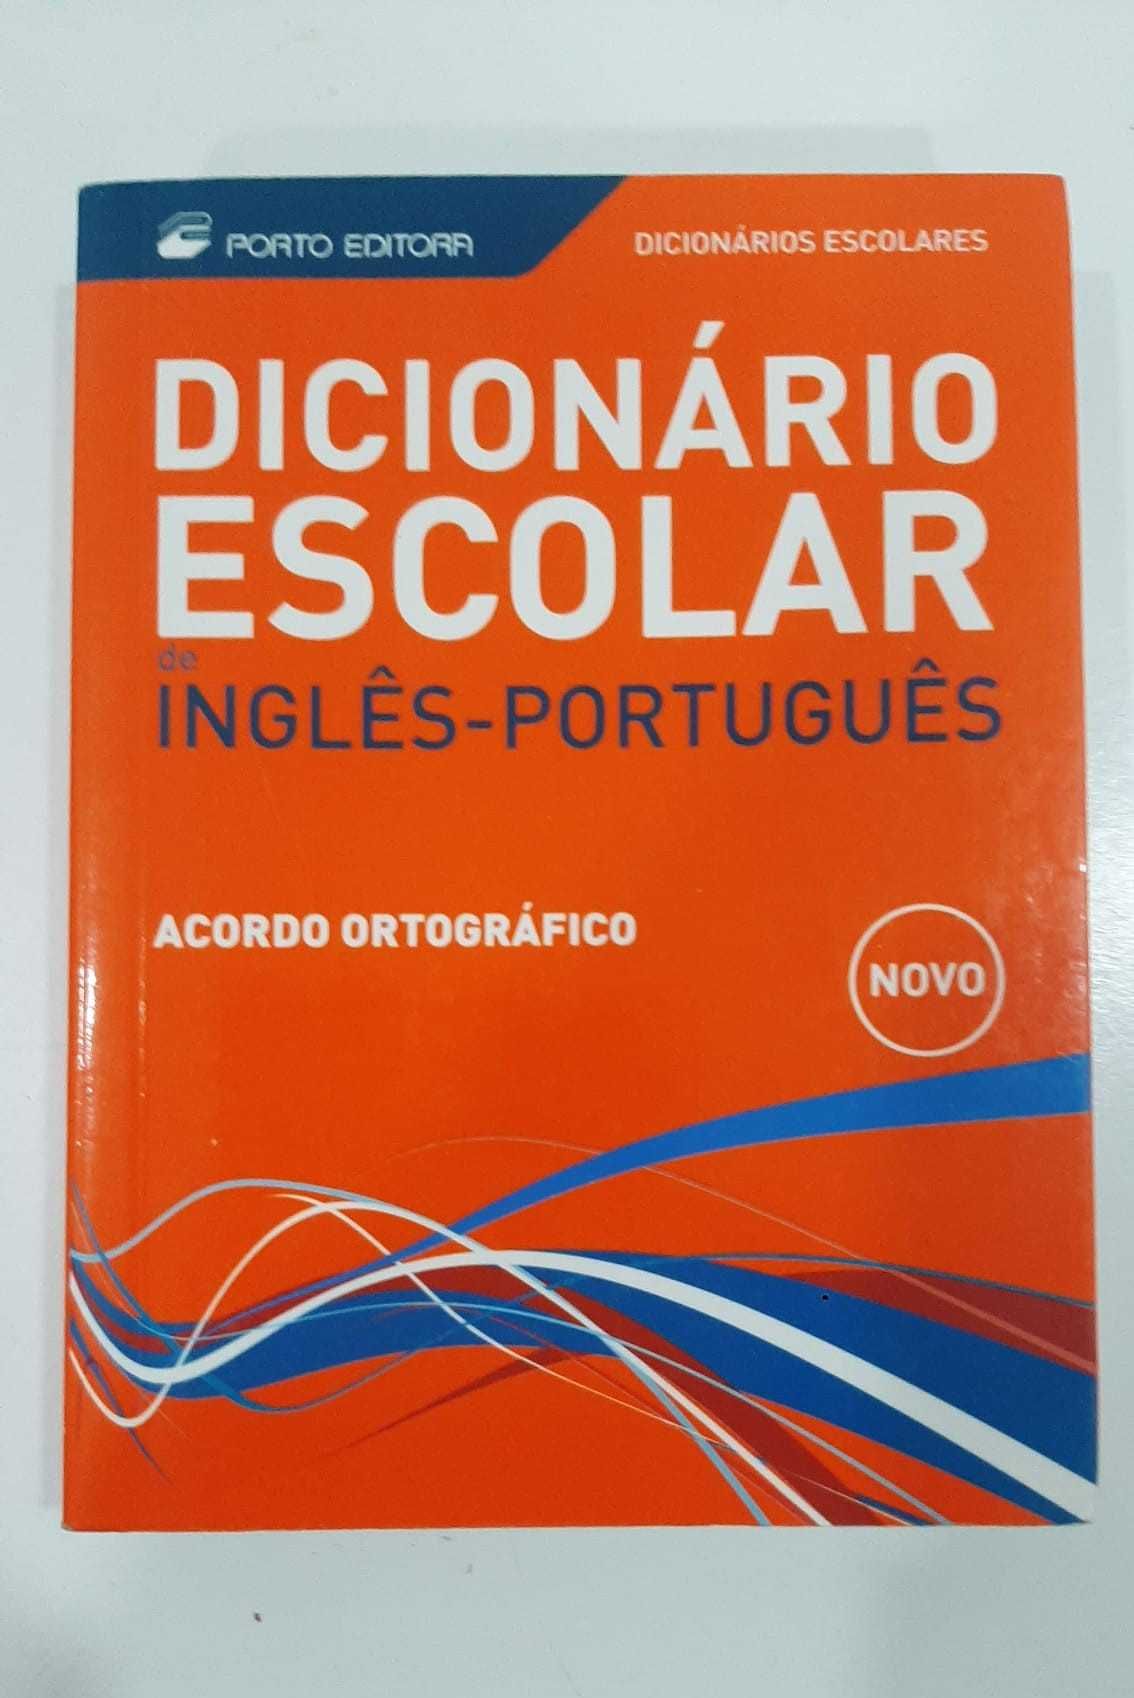 Dicionário escolar de inglês-português